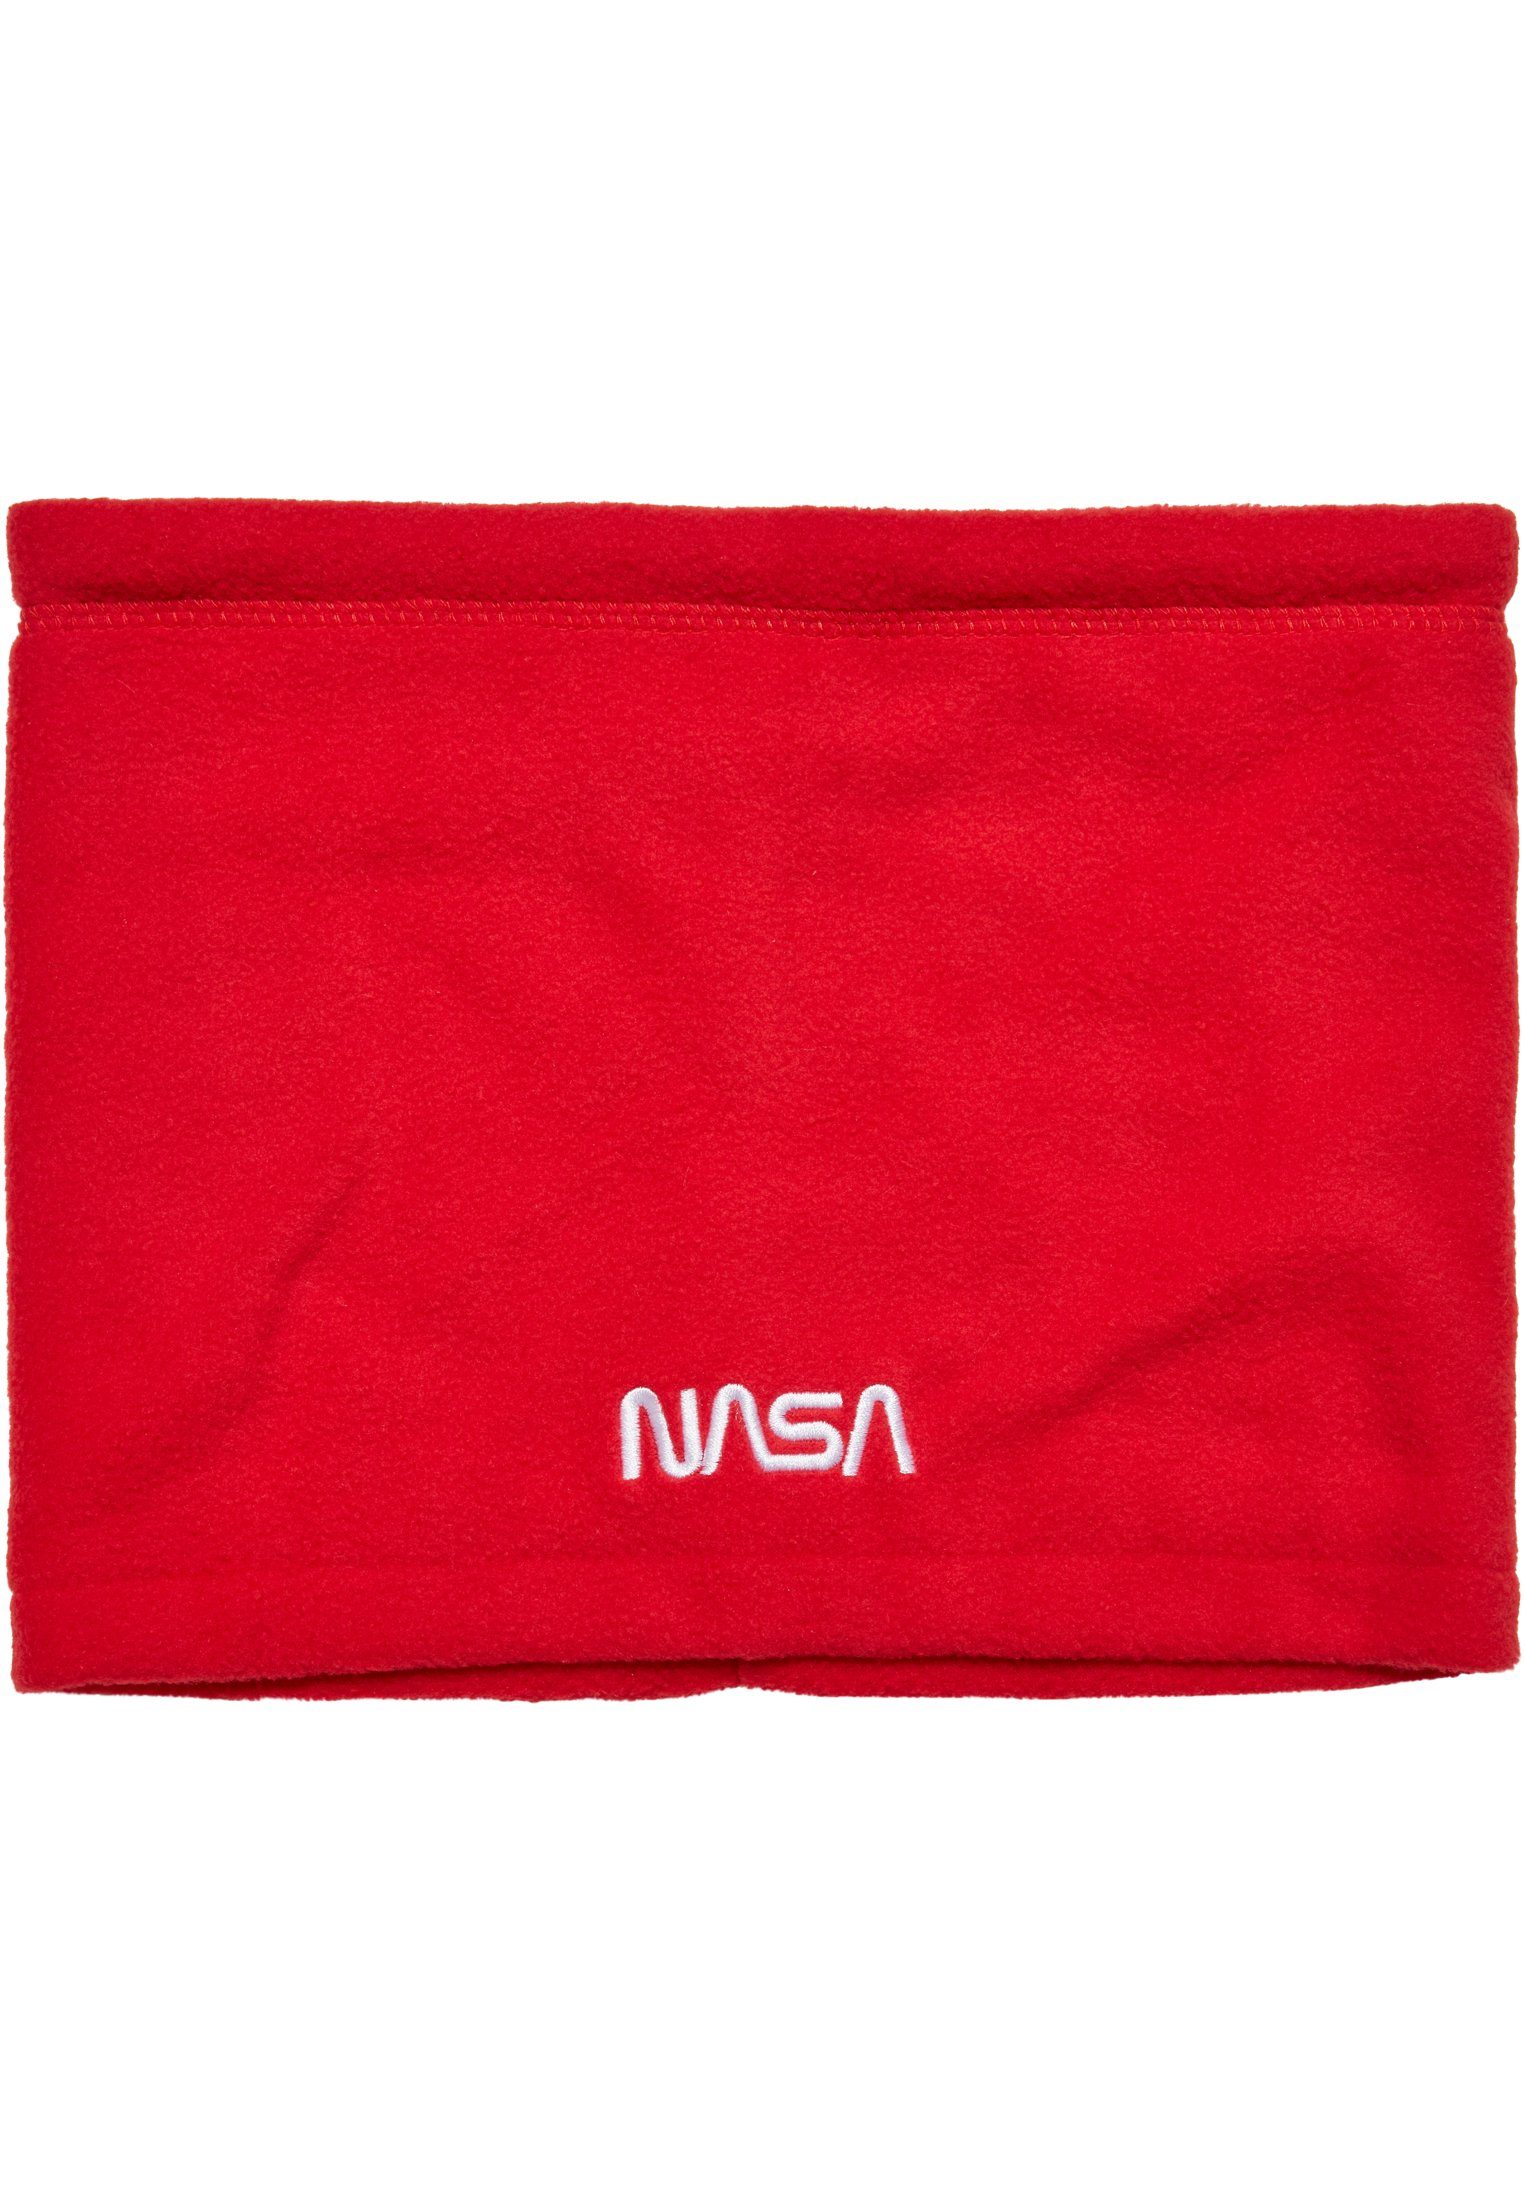 MisterTee NASA red Accessoires Fleece Baumwollhandschuhe Set